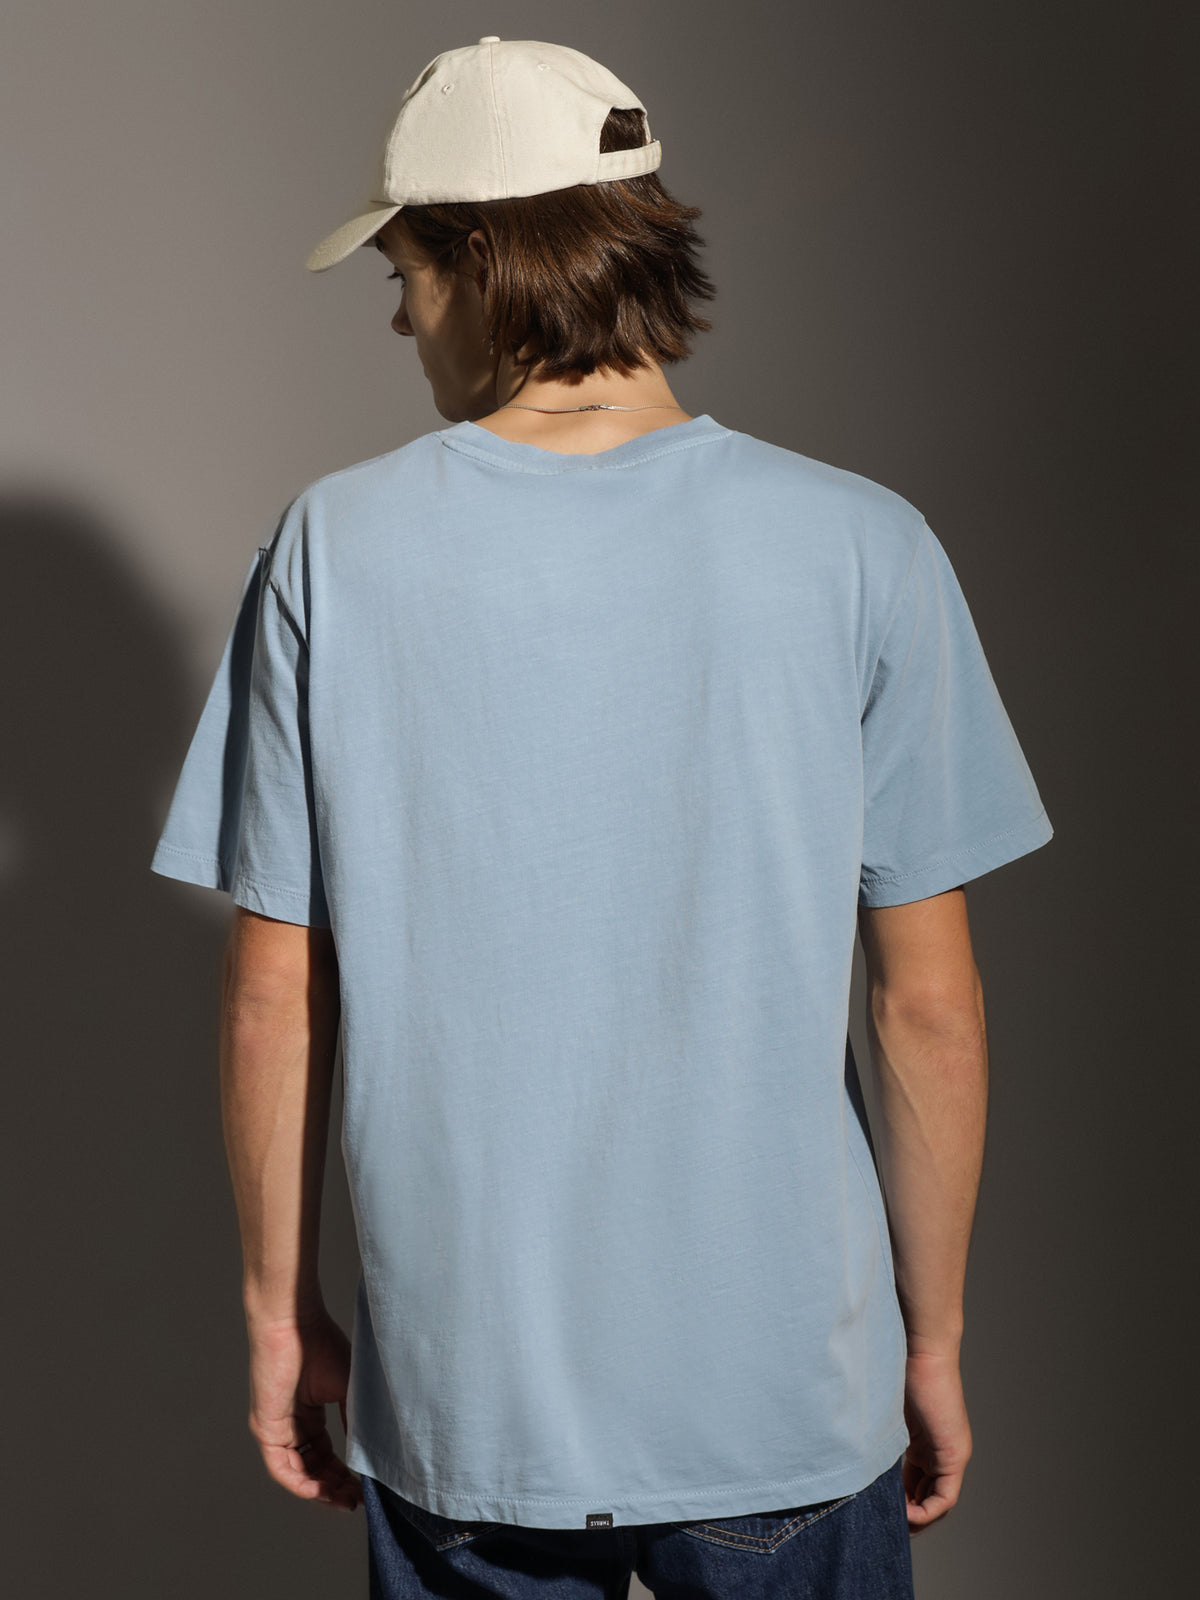 Minimal Thrills Merch Fit T-Shirt in Vintage Steel Blue